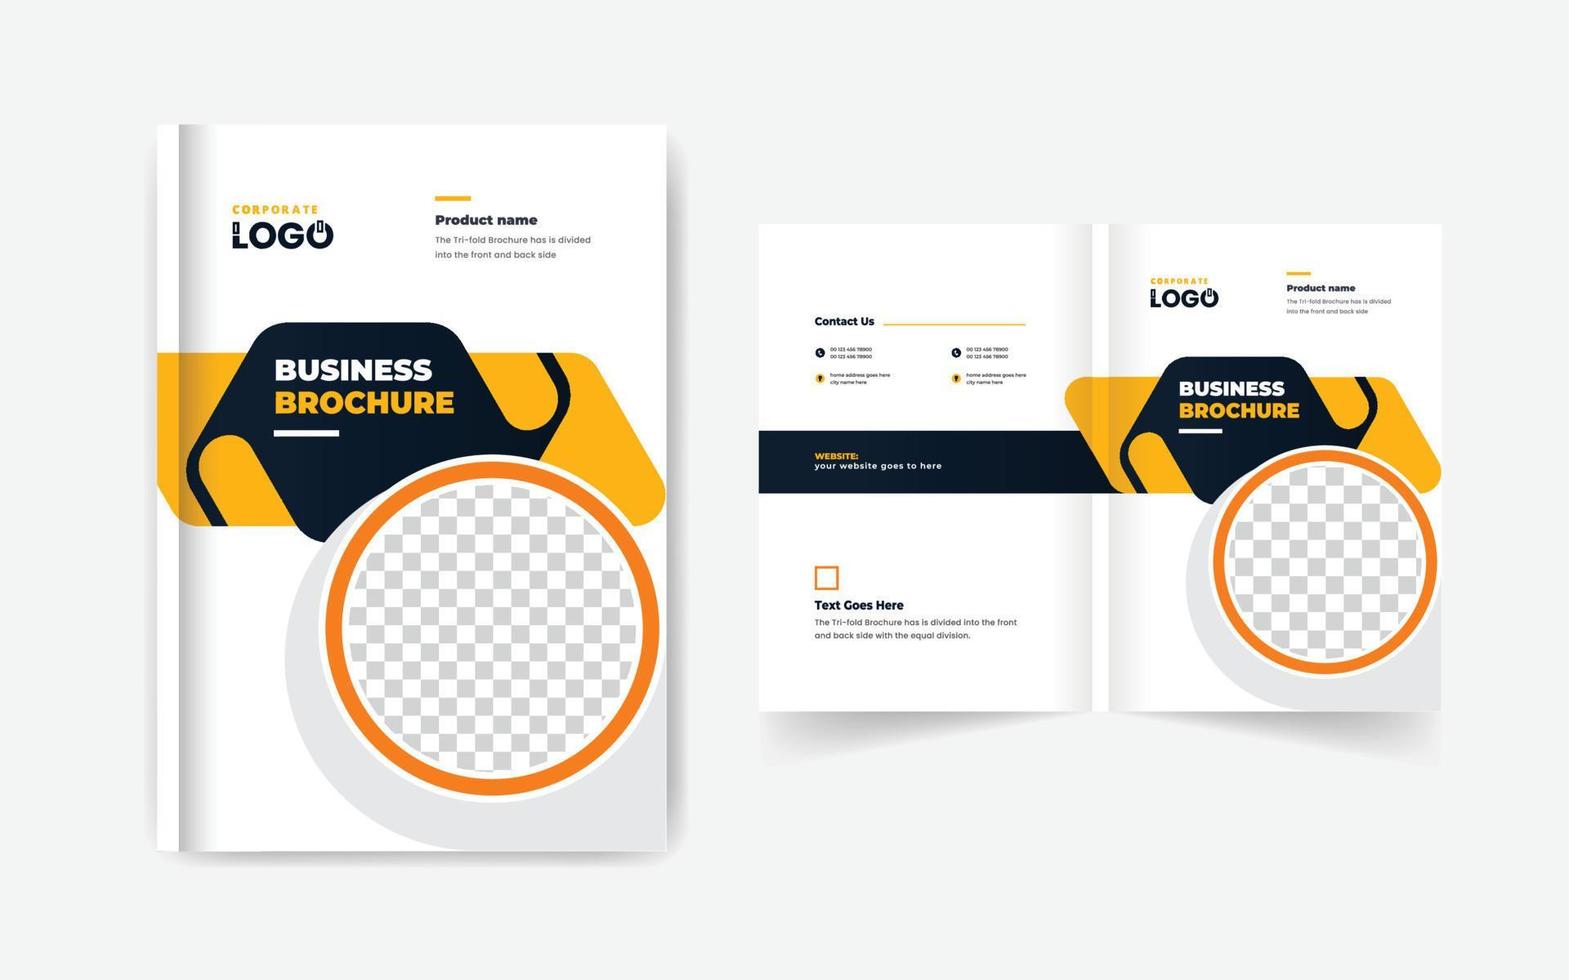 modelo de layout corporativo de design de capa de livro de brochura de negócios de perfil da empresa vetor